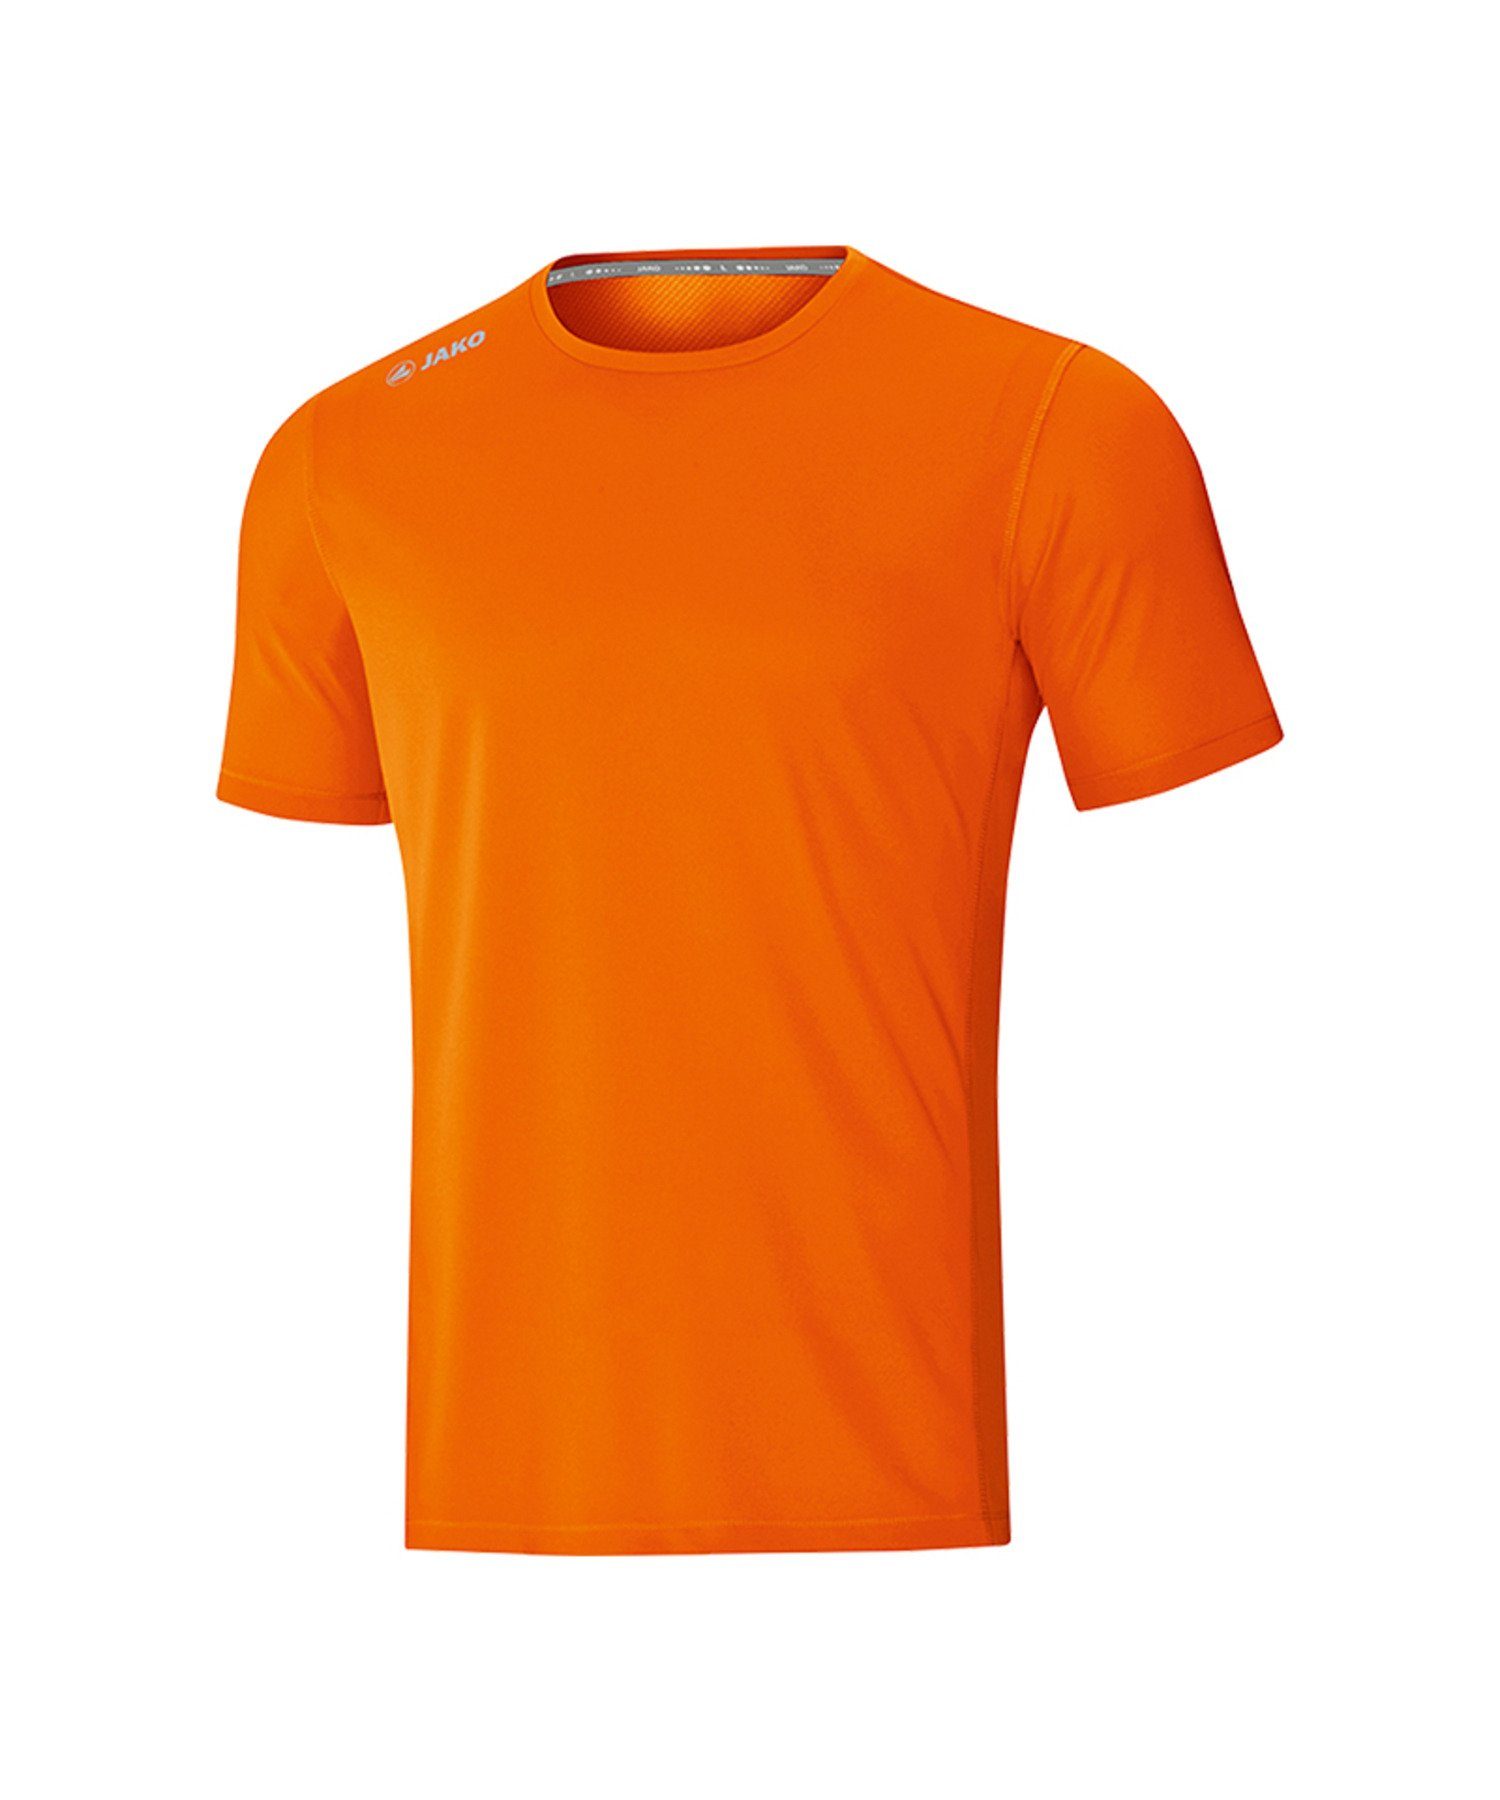 Jako Laufshirt Run T-Shirt Orange default Running 2.0 Kids